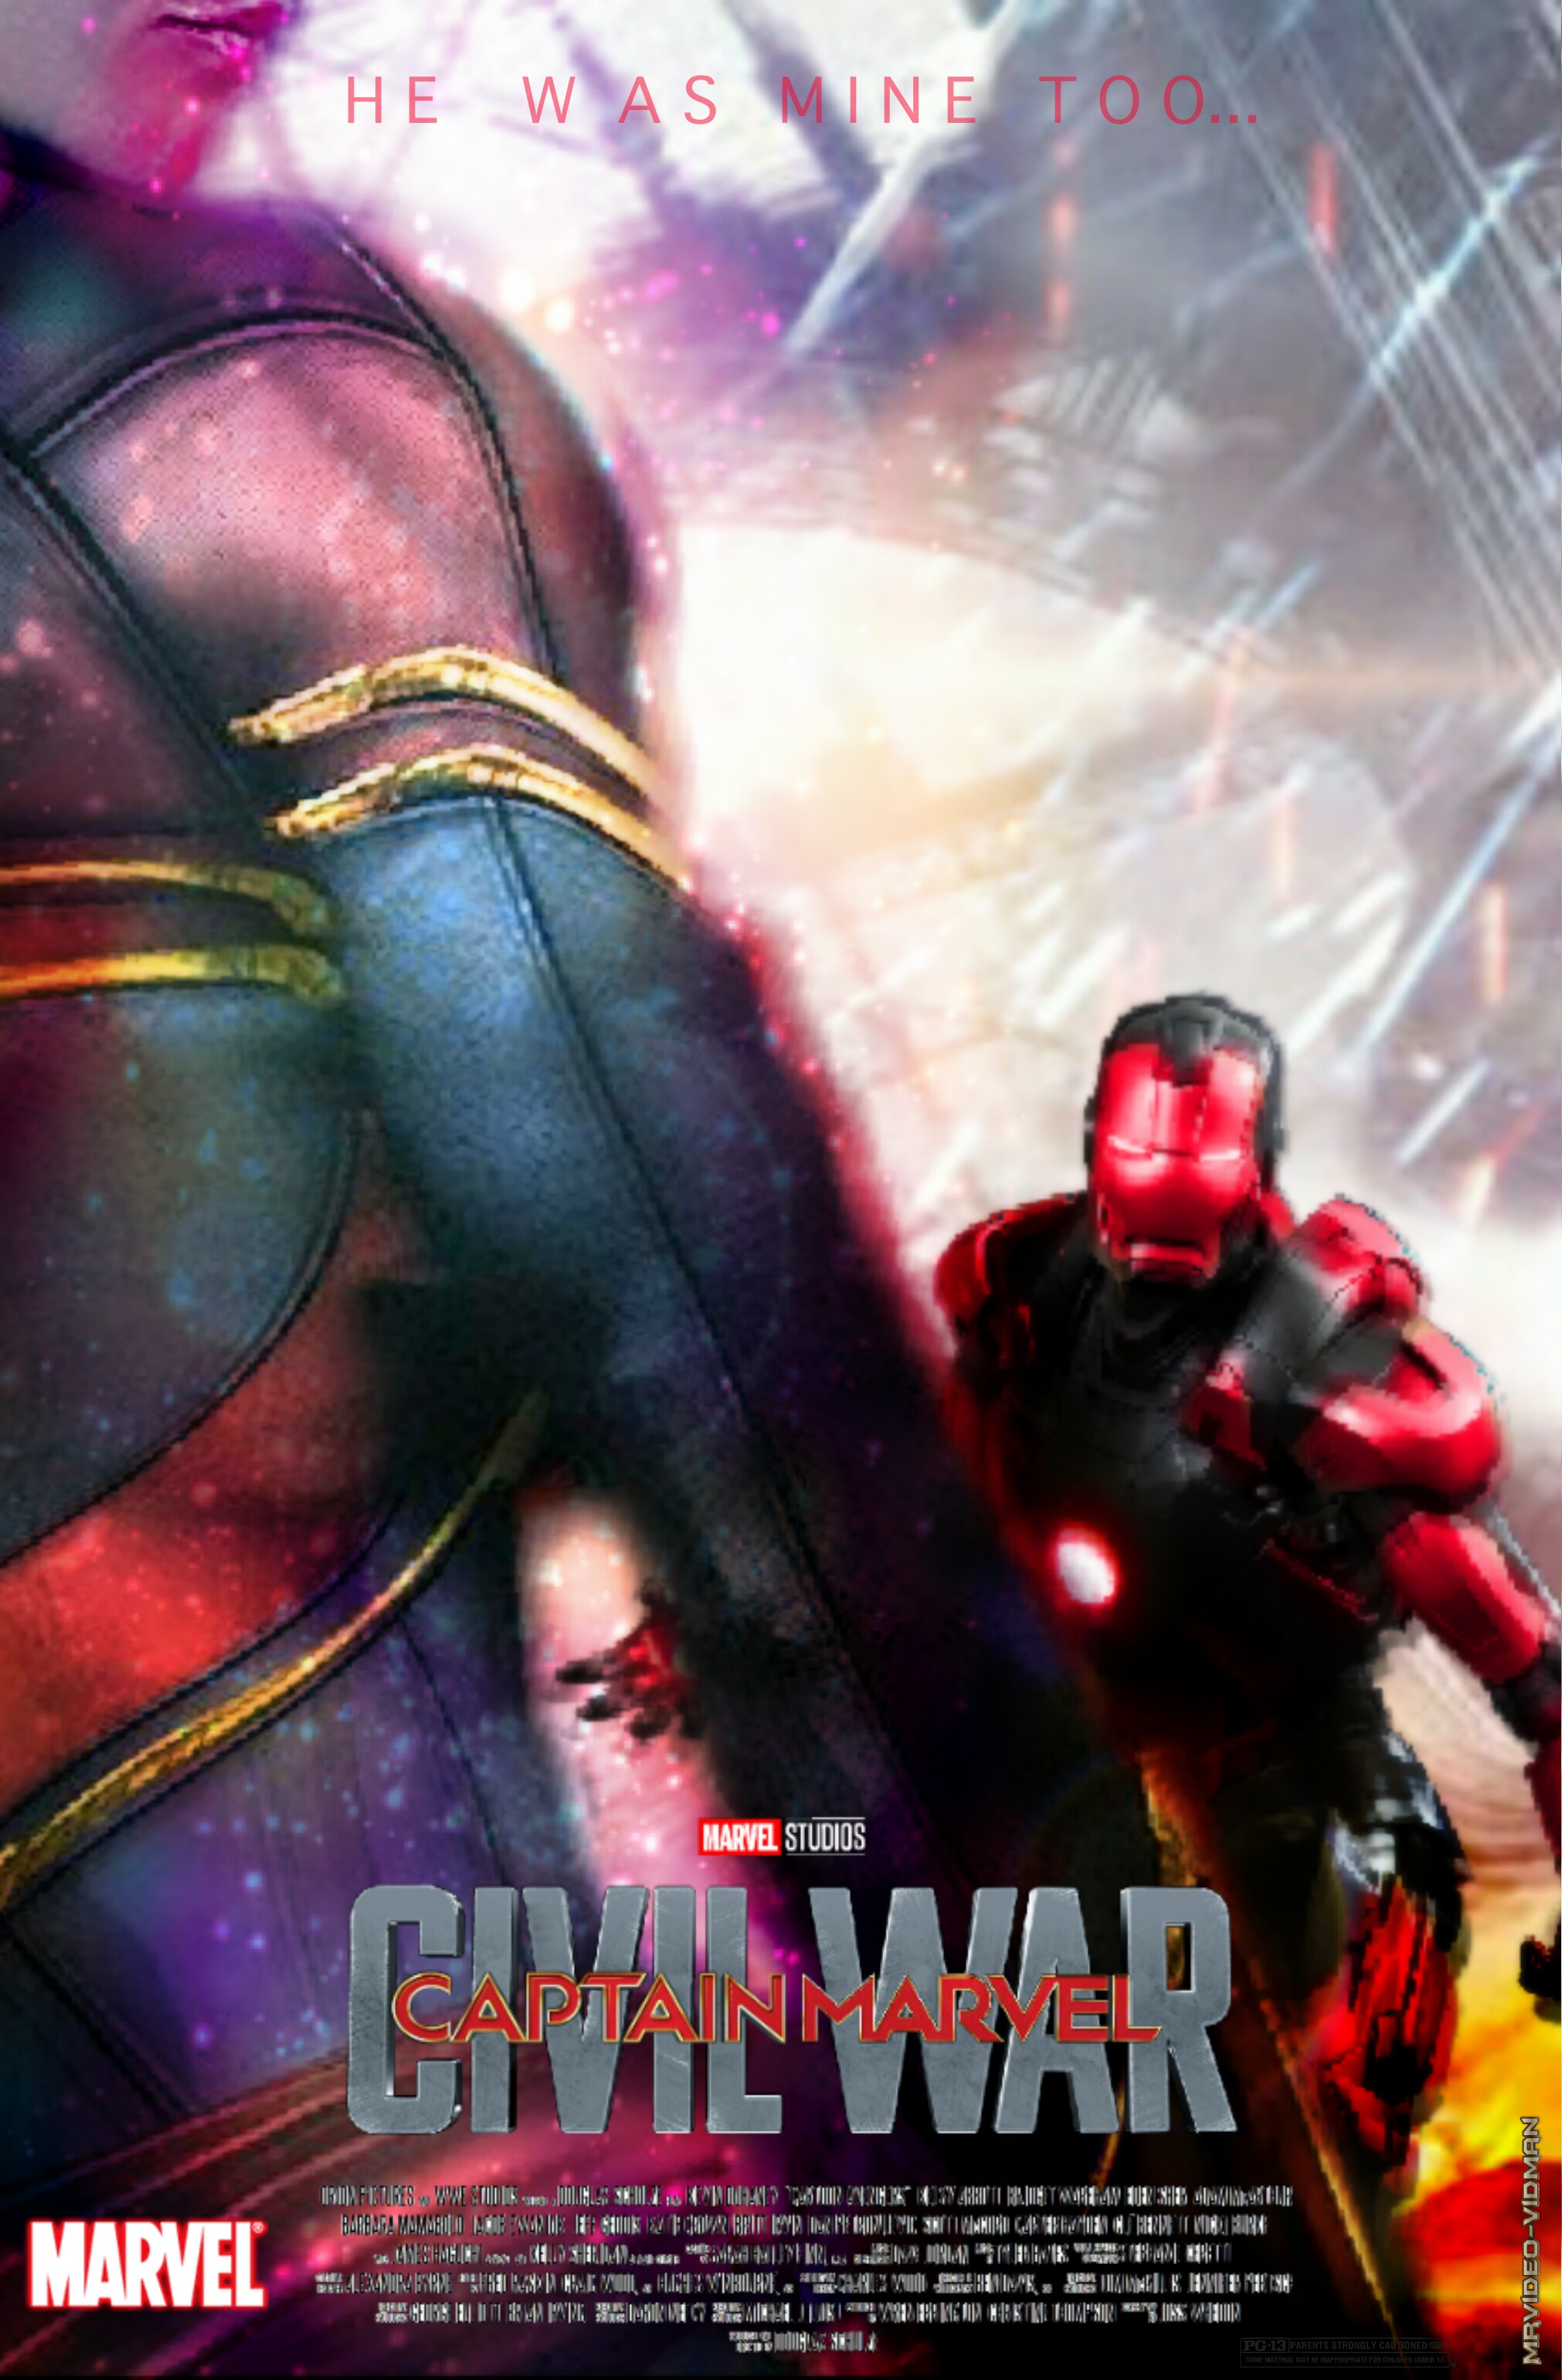 Chloë Grace Moretz Wants a Marvel Villain Role in the MCU